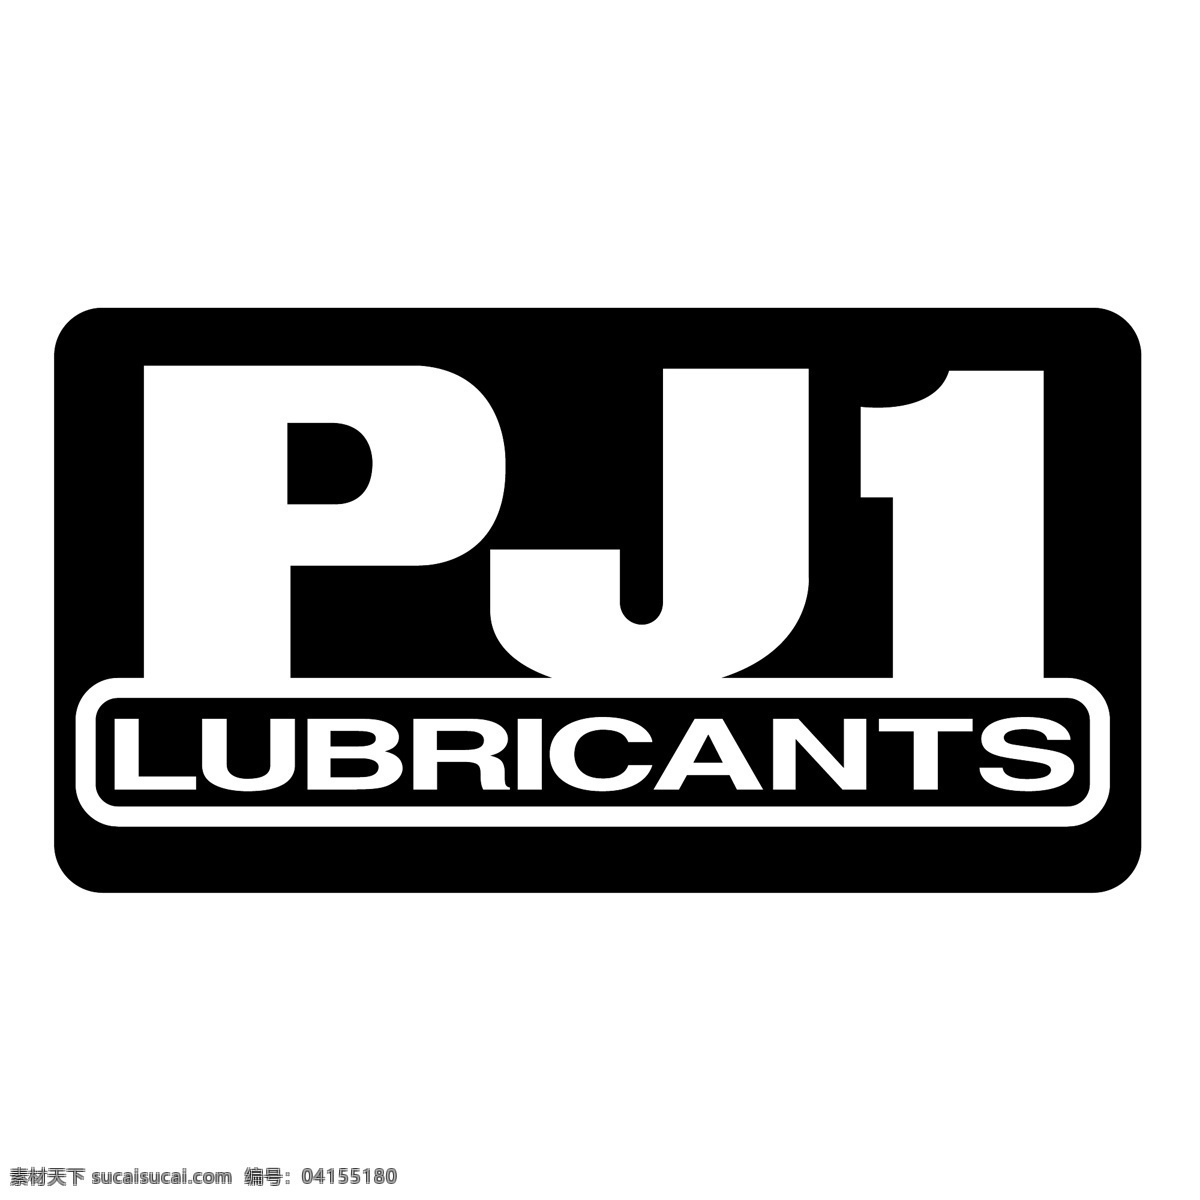 pj1 润滑油 eps矢量 pj1润滑油 向量 埃克森 美孚 润滑油的标志 润滑油公司 徘徊 延长 超级 润滑剂 矢量